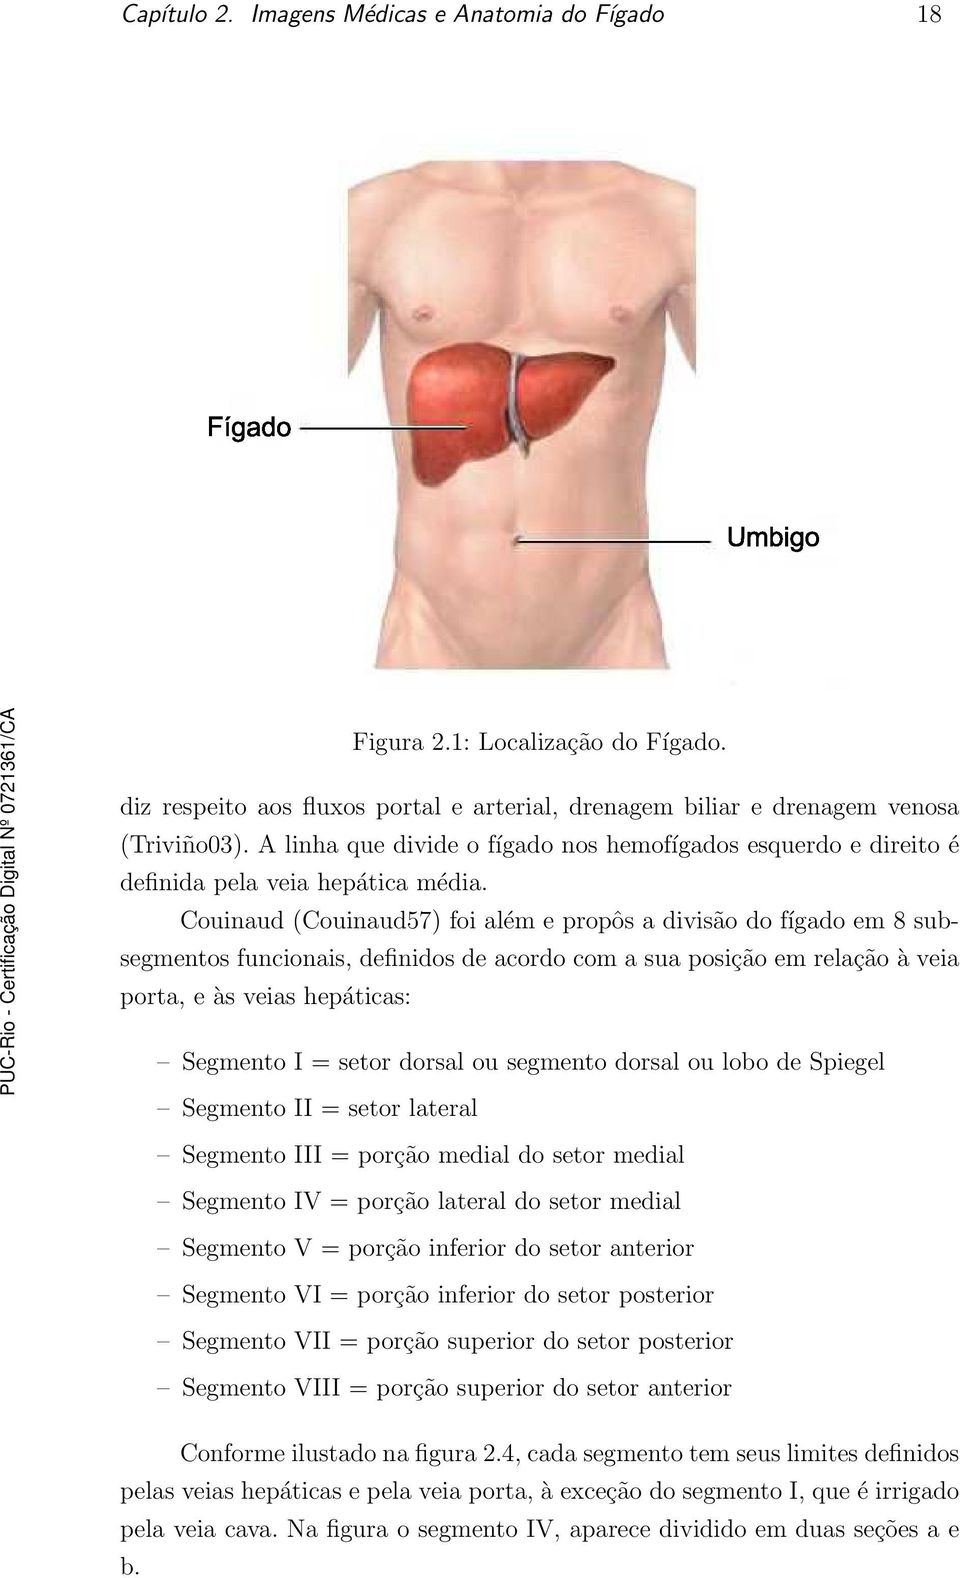 Couinaud (Couinaud57) foi além e propôs a divisão do fígado em 8 subsegmentos funcionais, definidos de acordo com a sua posição em relação à veia porta, e às veias hepáticas: Segmento I = setor